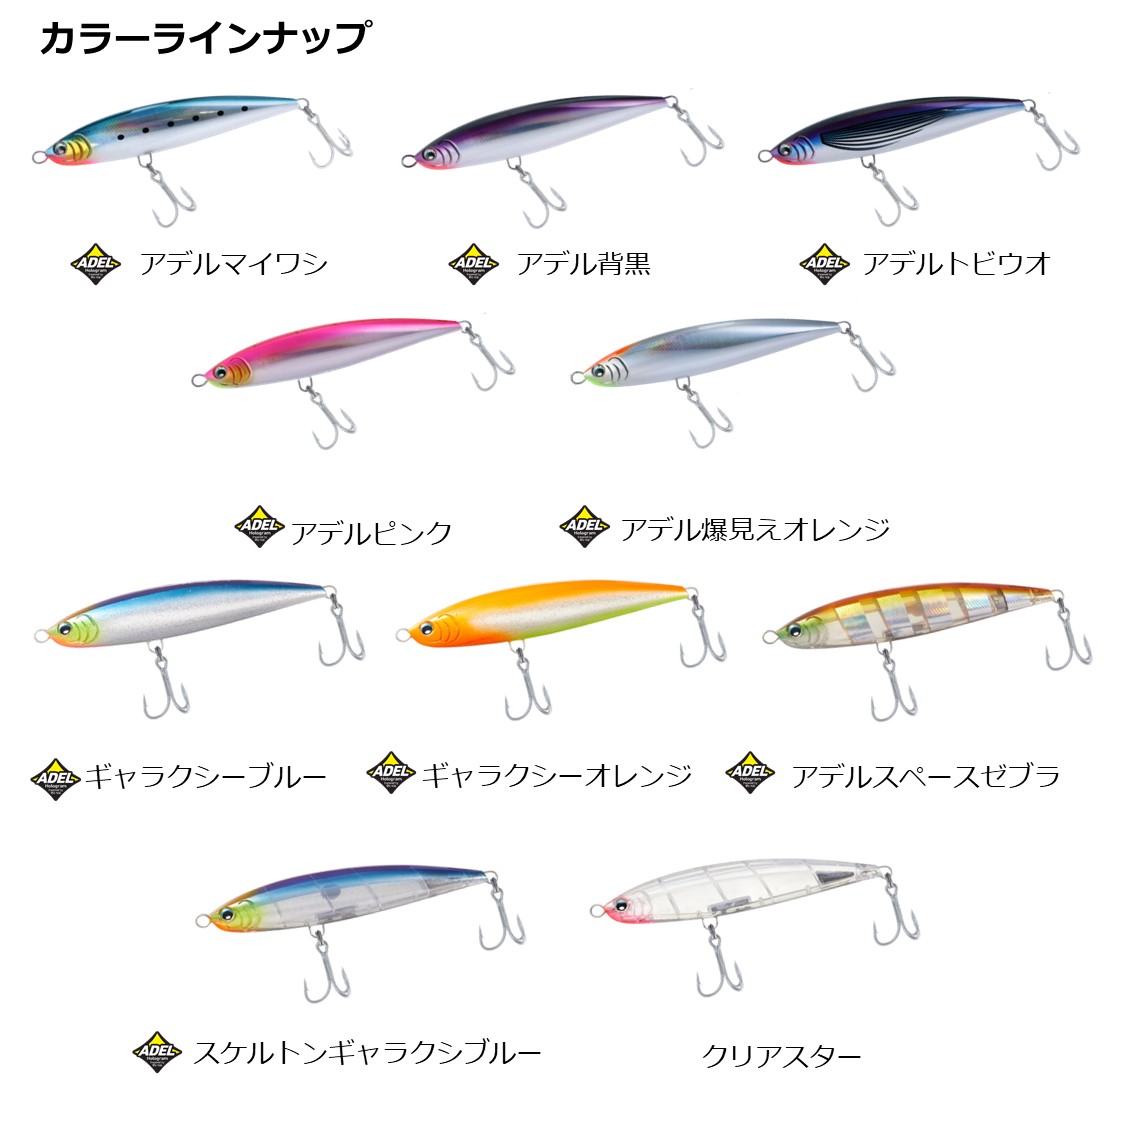 全6色 ダイワ ソルティガ ダイブ スター 190f ソルトルアー 釣り具の販売 通販なら フィッシング遊 Web本店 ダイワ シマノ がまかつの釣具ならおまかせ